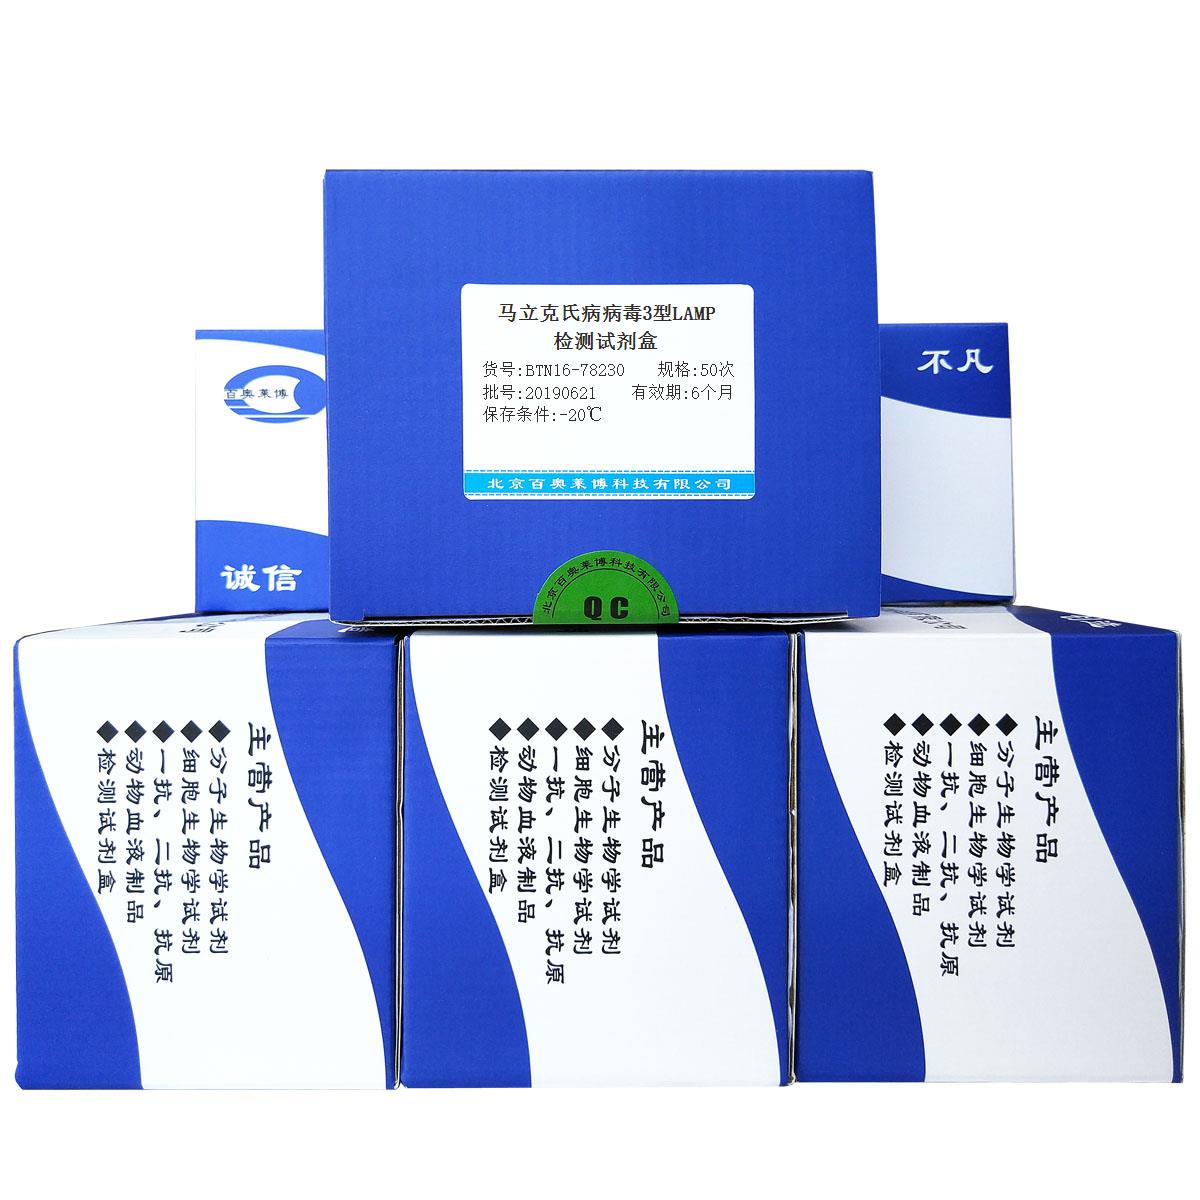 马立克氏病病毒3型LAMP检测试剂盒北京供应商